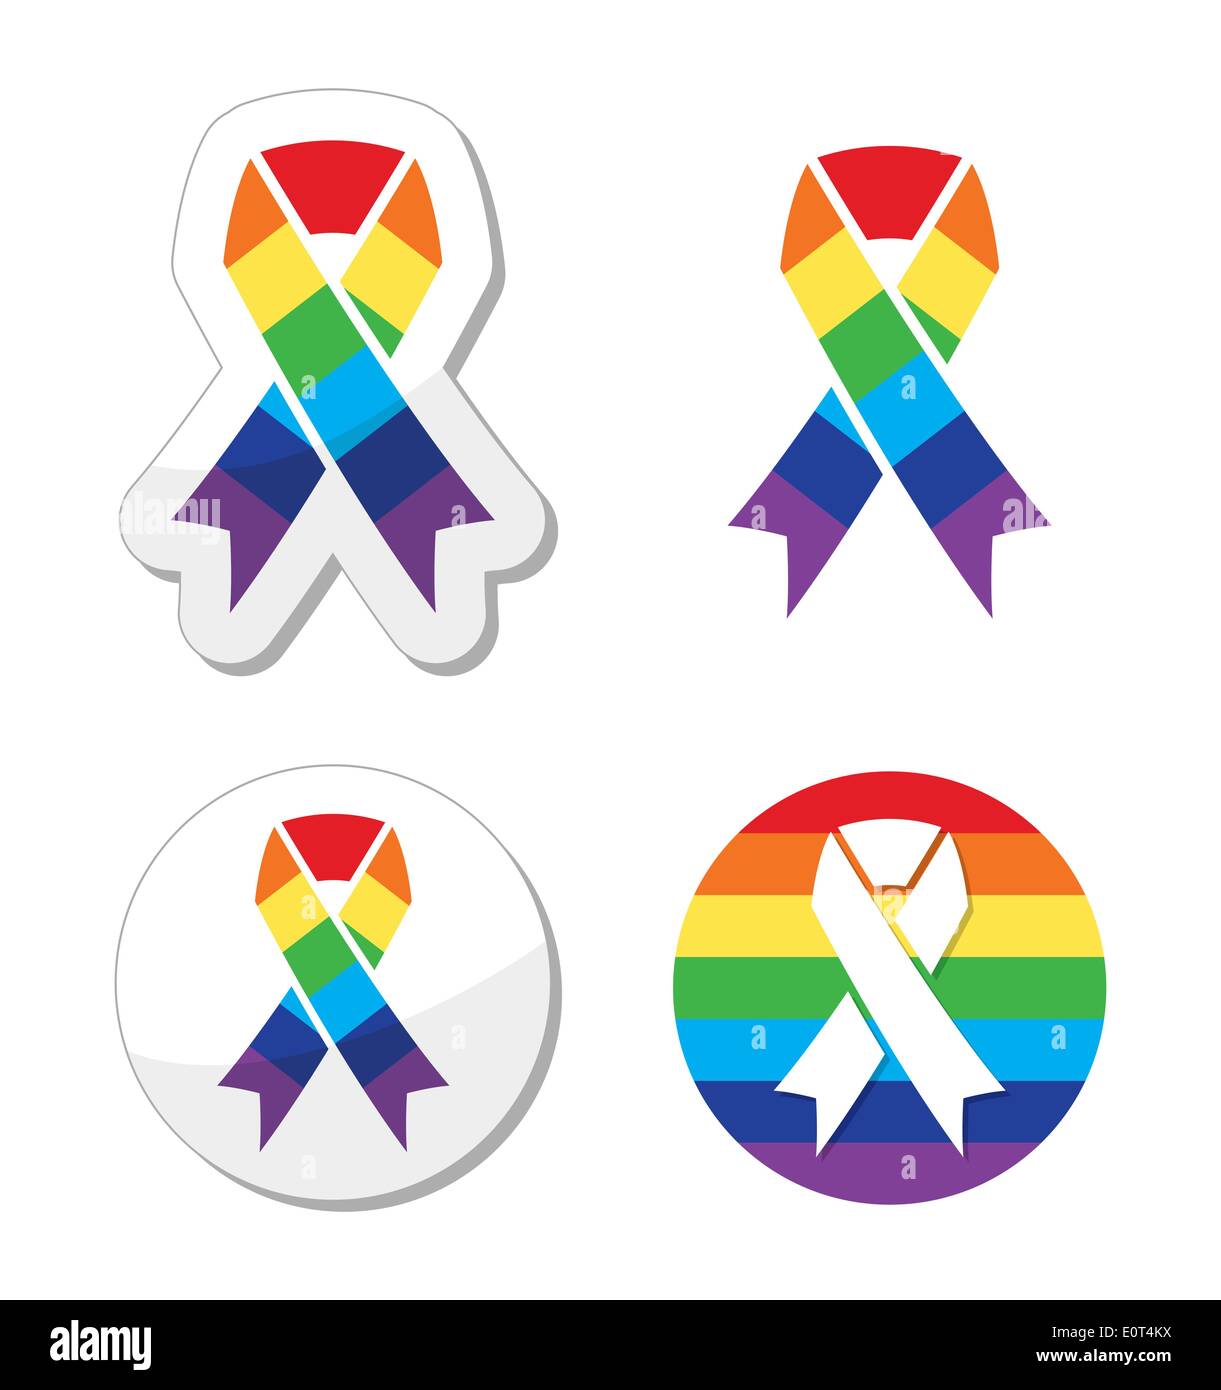 Ruban drapeau arc-en-ciel - symbole de la fierté gay et l'appui à la communauté GLBT Illustration de Vecteur